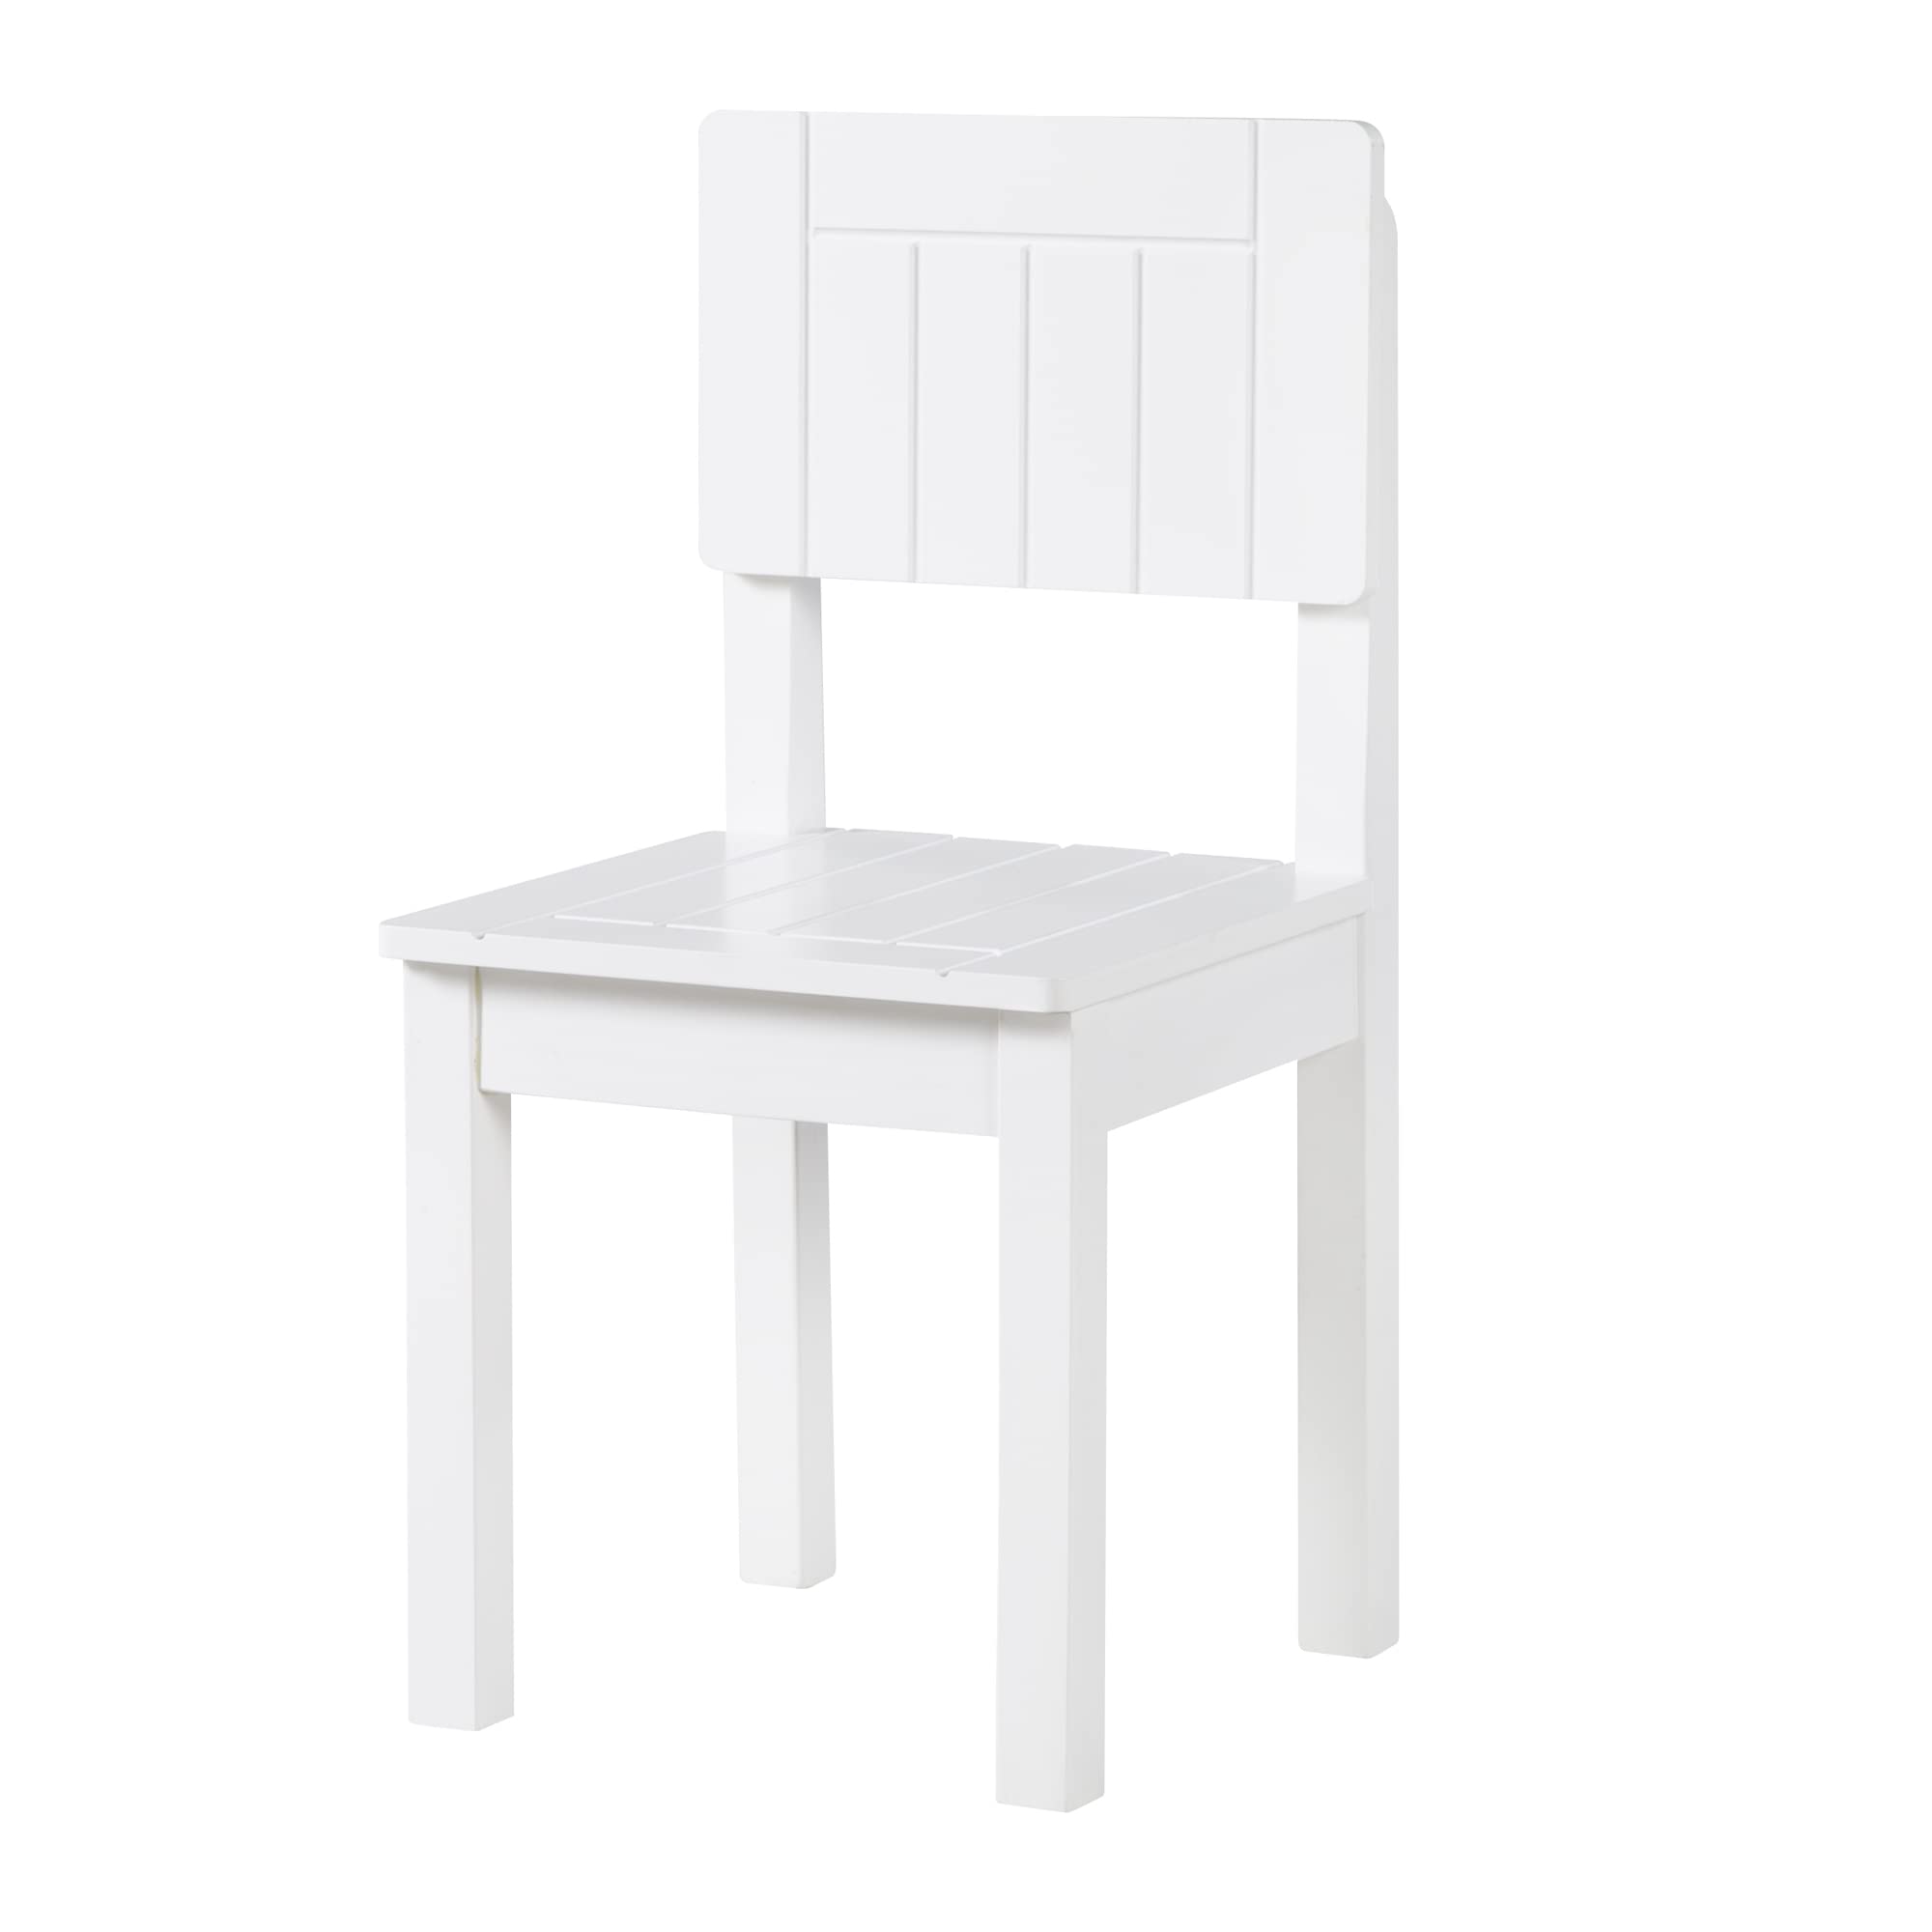 roba Kinderstuhl, Stuhl mit Lehne für Kinder, weiß lackiert, HxBxT: 59x29x29 cm, Sitzhöhe 31 cm